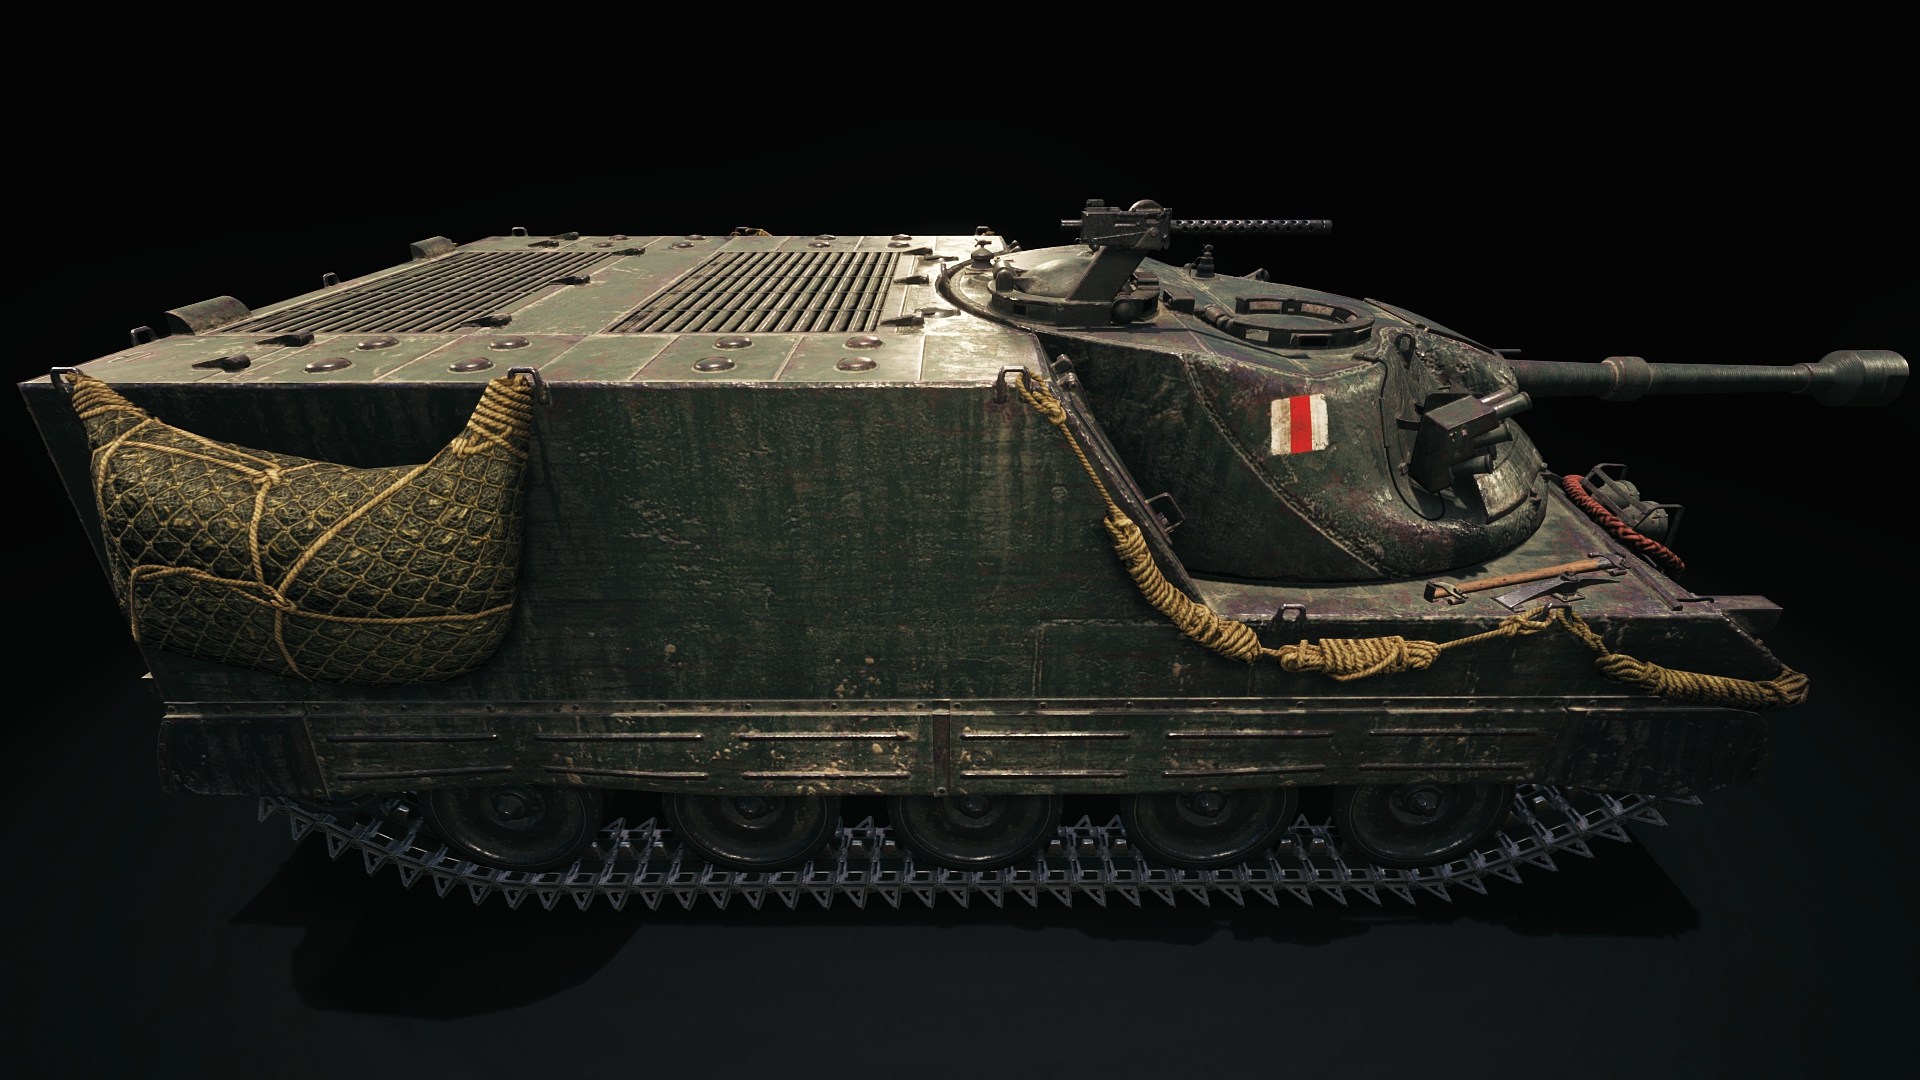 坦克世界中的圣剑坦克歼击车模型，如果背后的导弹能用岂不是开挂了？嘻嘻嘻